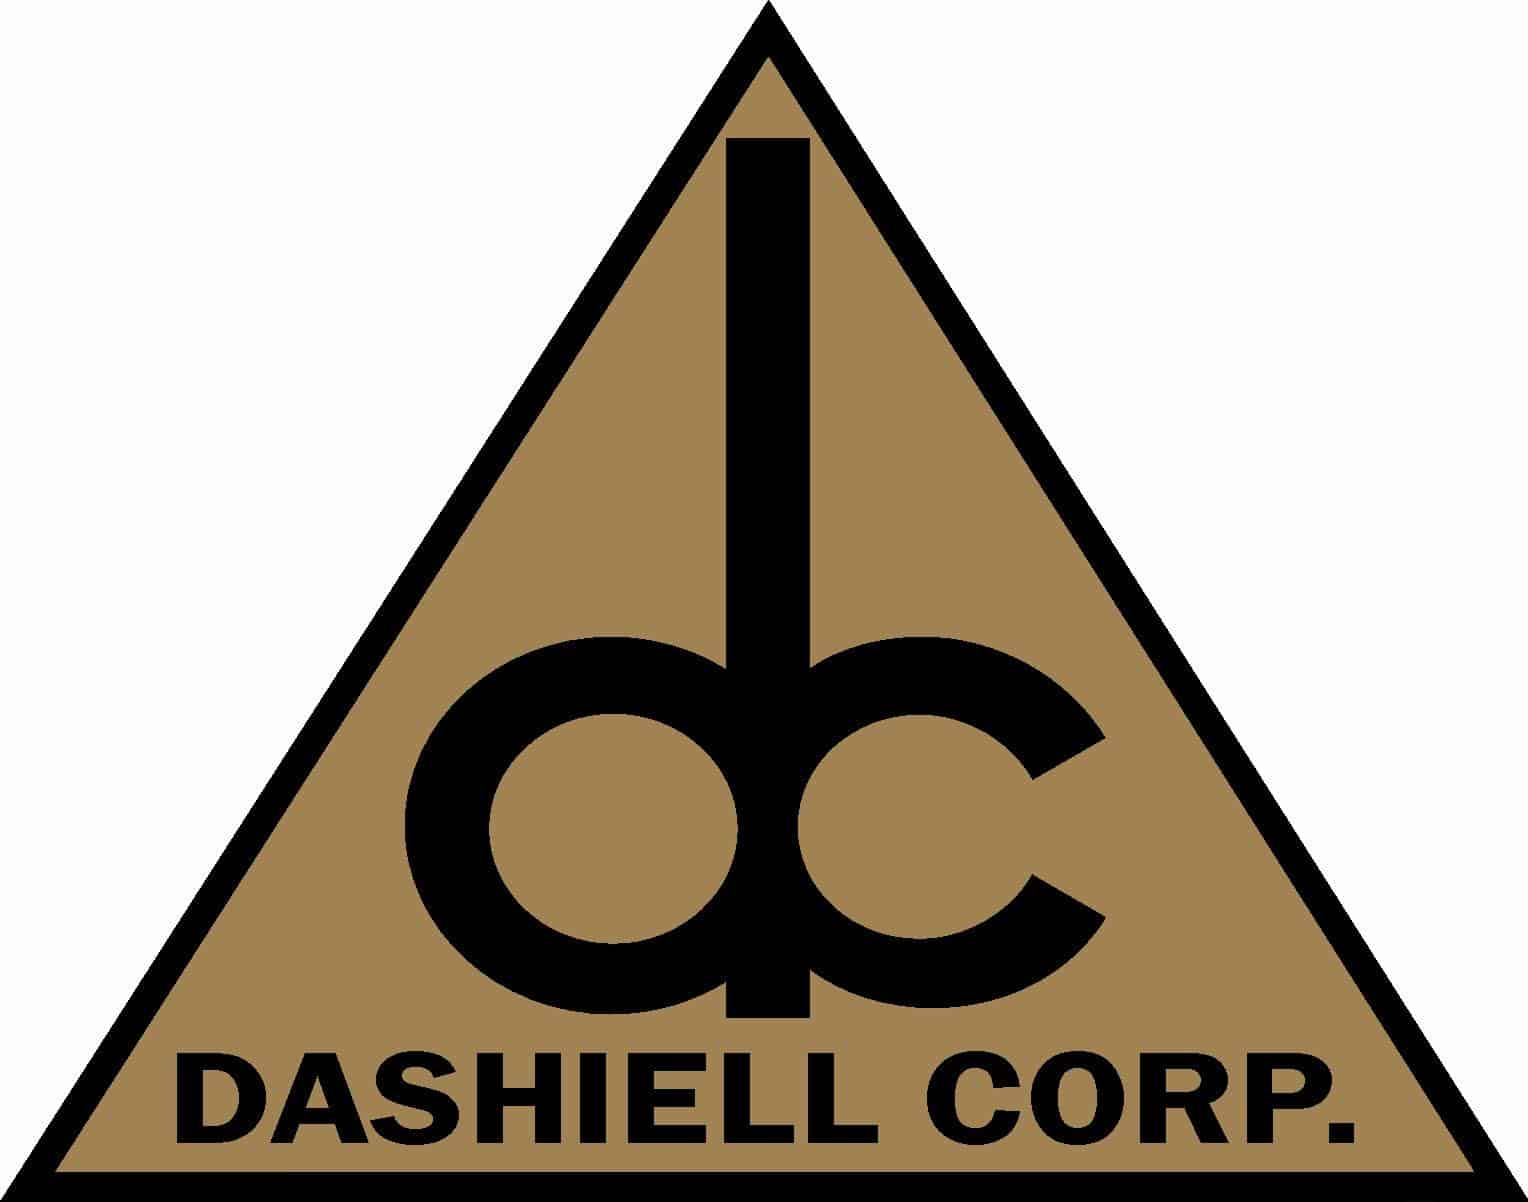 Dashiell Corp.